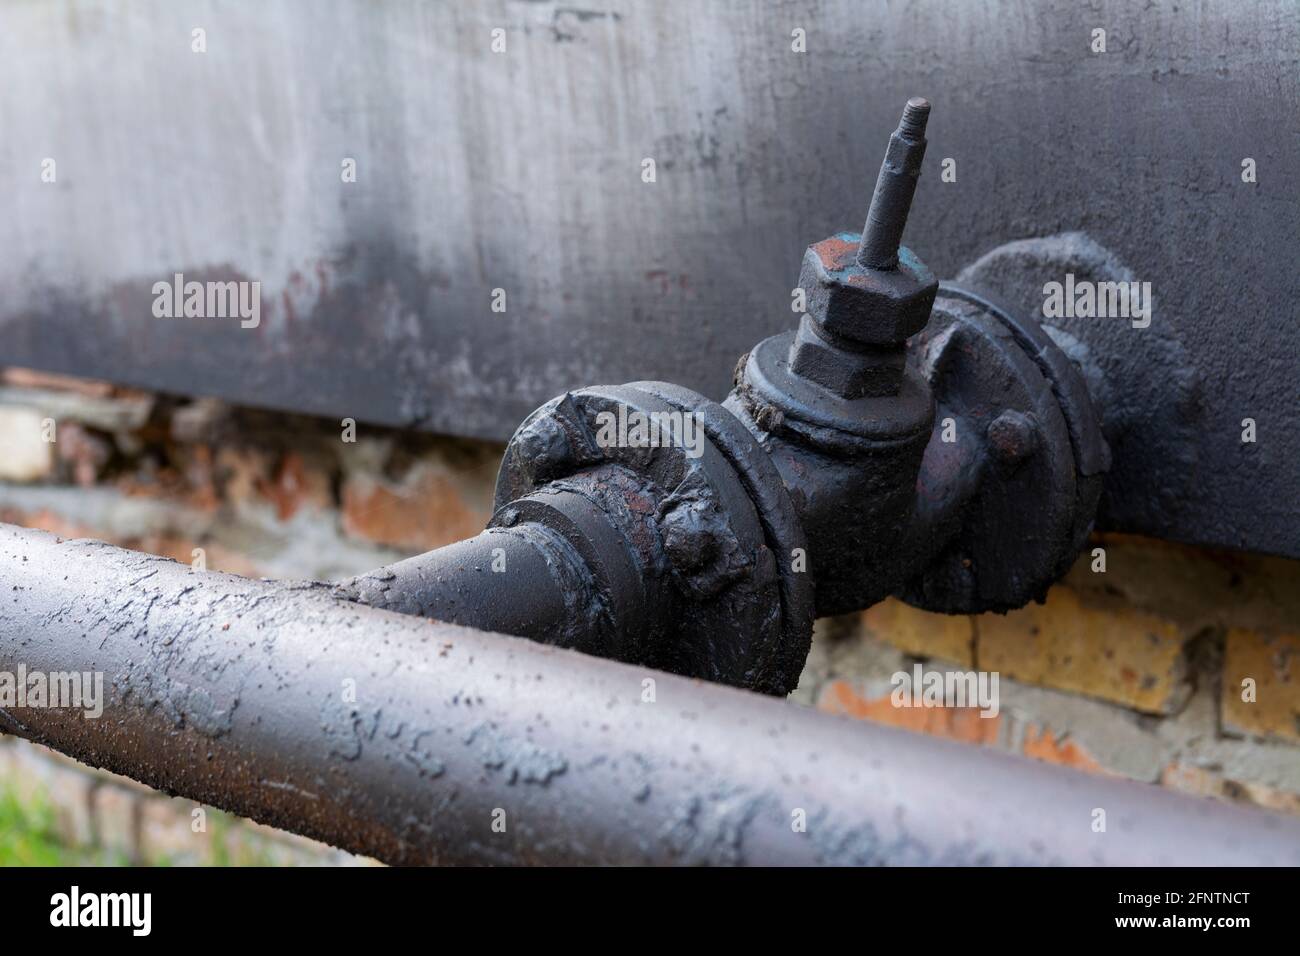 Rohr für Dieselkraftstoff oder Öl mit Ventil. Eine Schicht schwarzen getrockneten Brennstoffs auf einem alten Metallhahn. Stockfoto